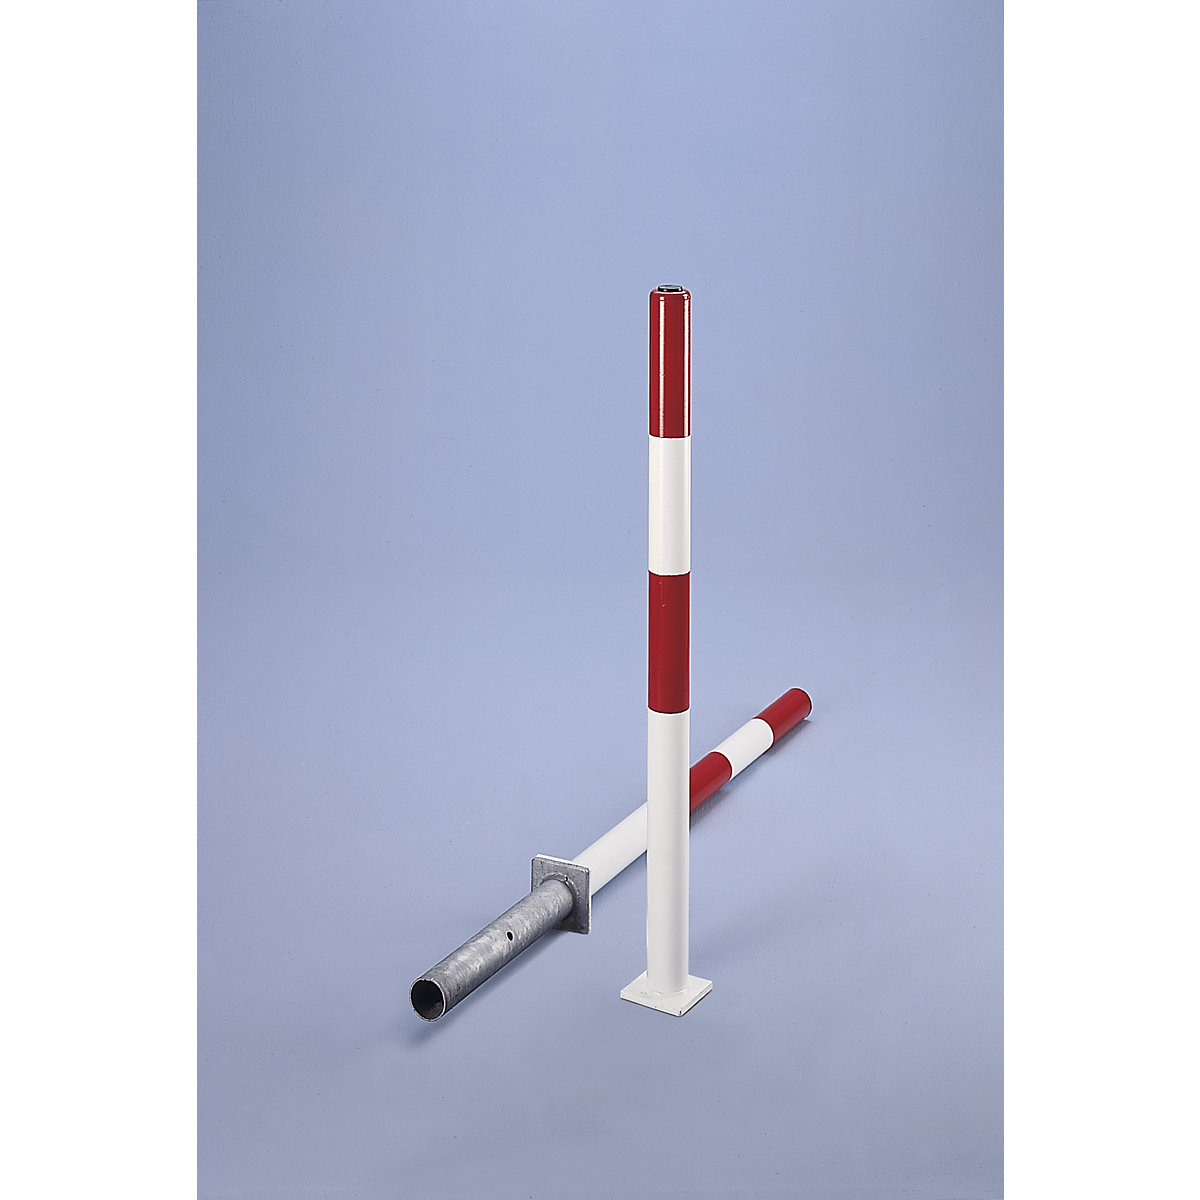 Stâlp de blocare din țeavă tubulară de oțel, roșu / alb, pentru betonare, Ø 76 mm, cu broască cilindrică incl. 3 chei